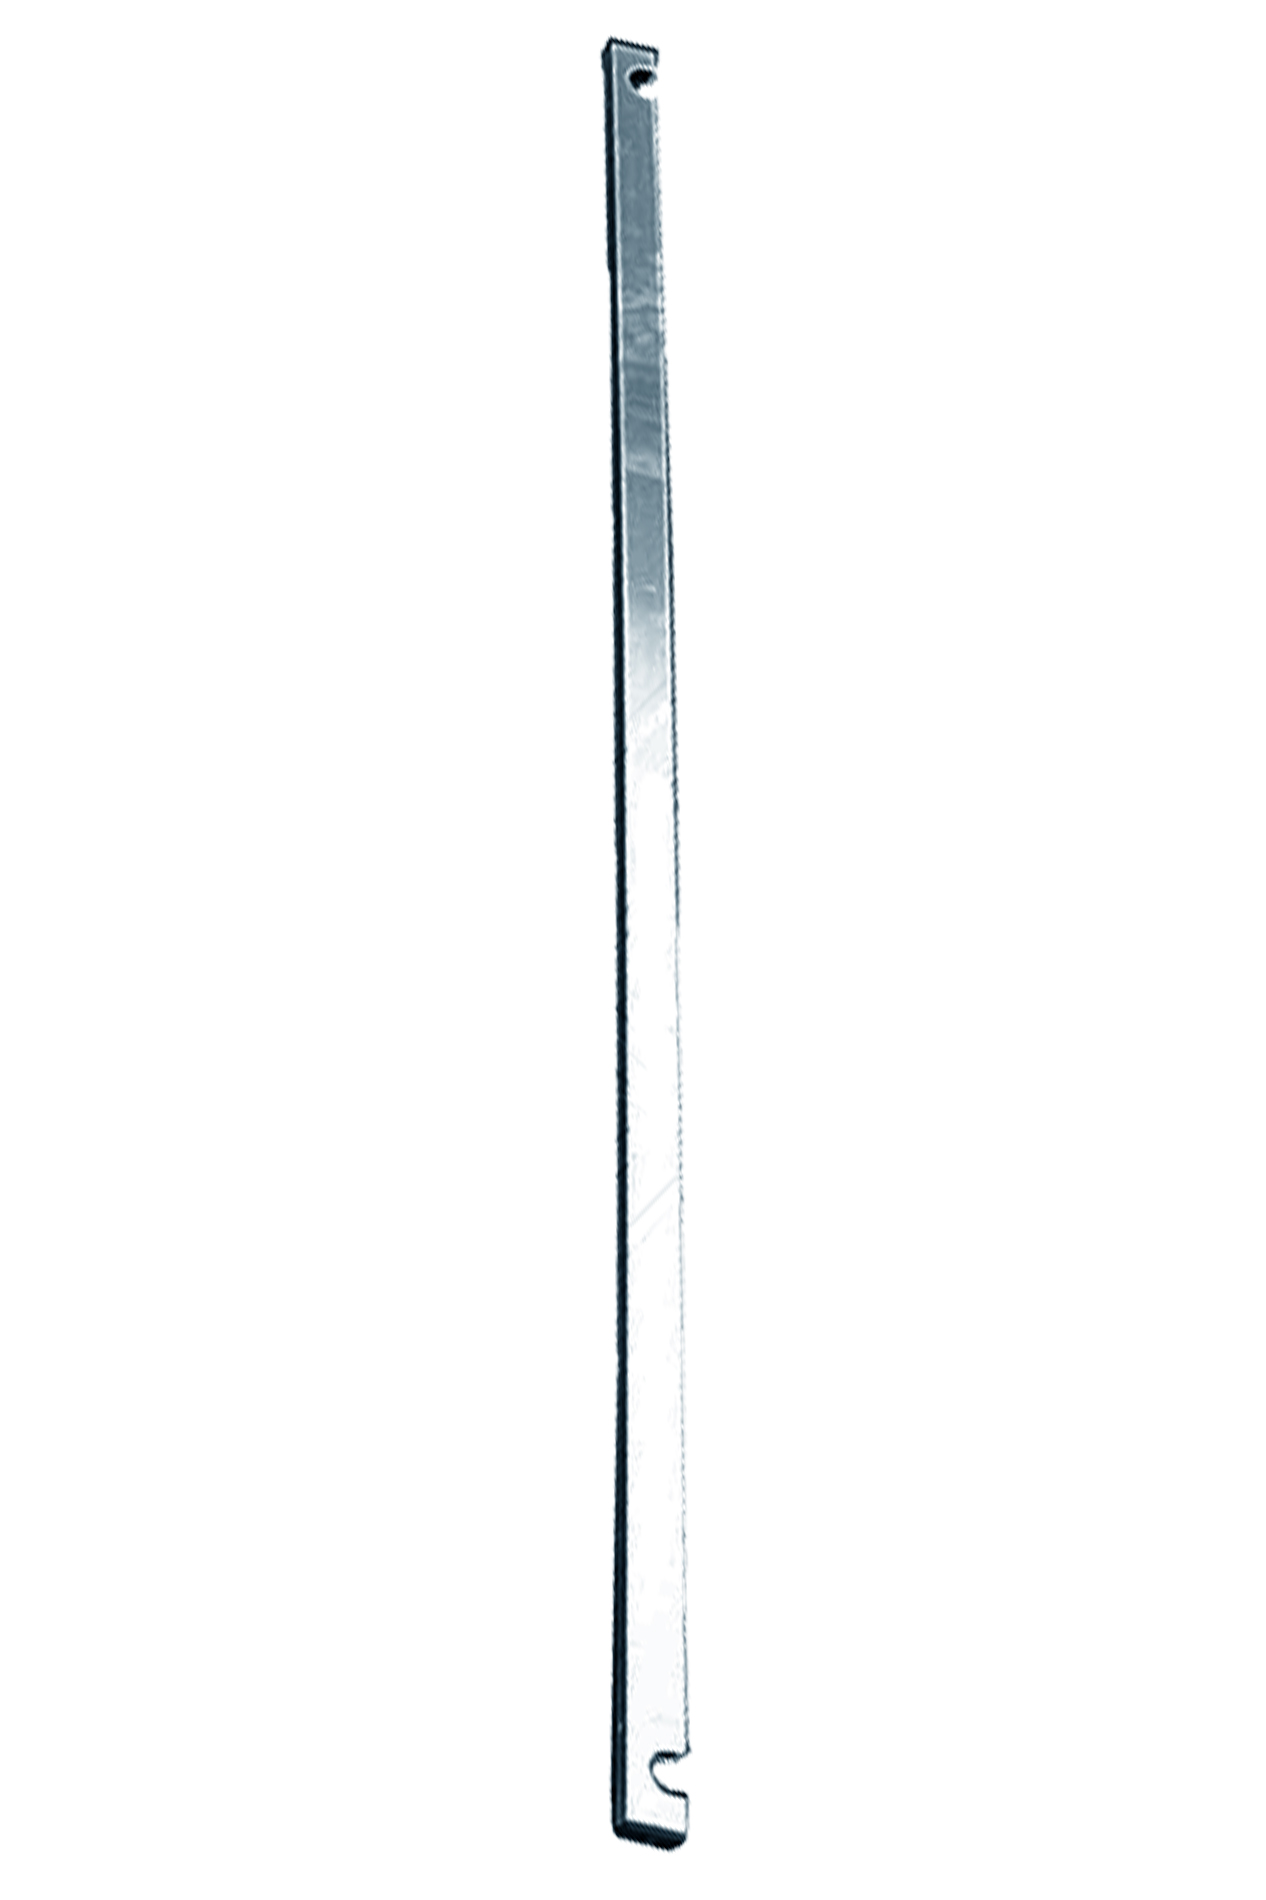 Дополнительное изображение Stabilo серии 5500 рабочая высота 8,4 м, размер площадки (2x1.5 м)